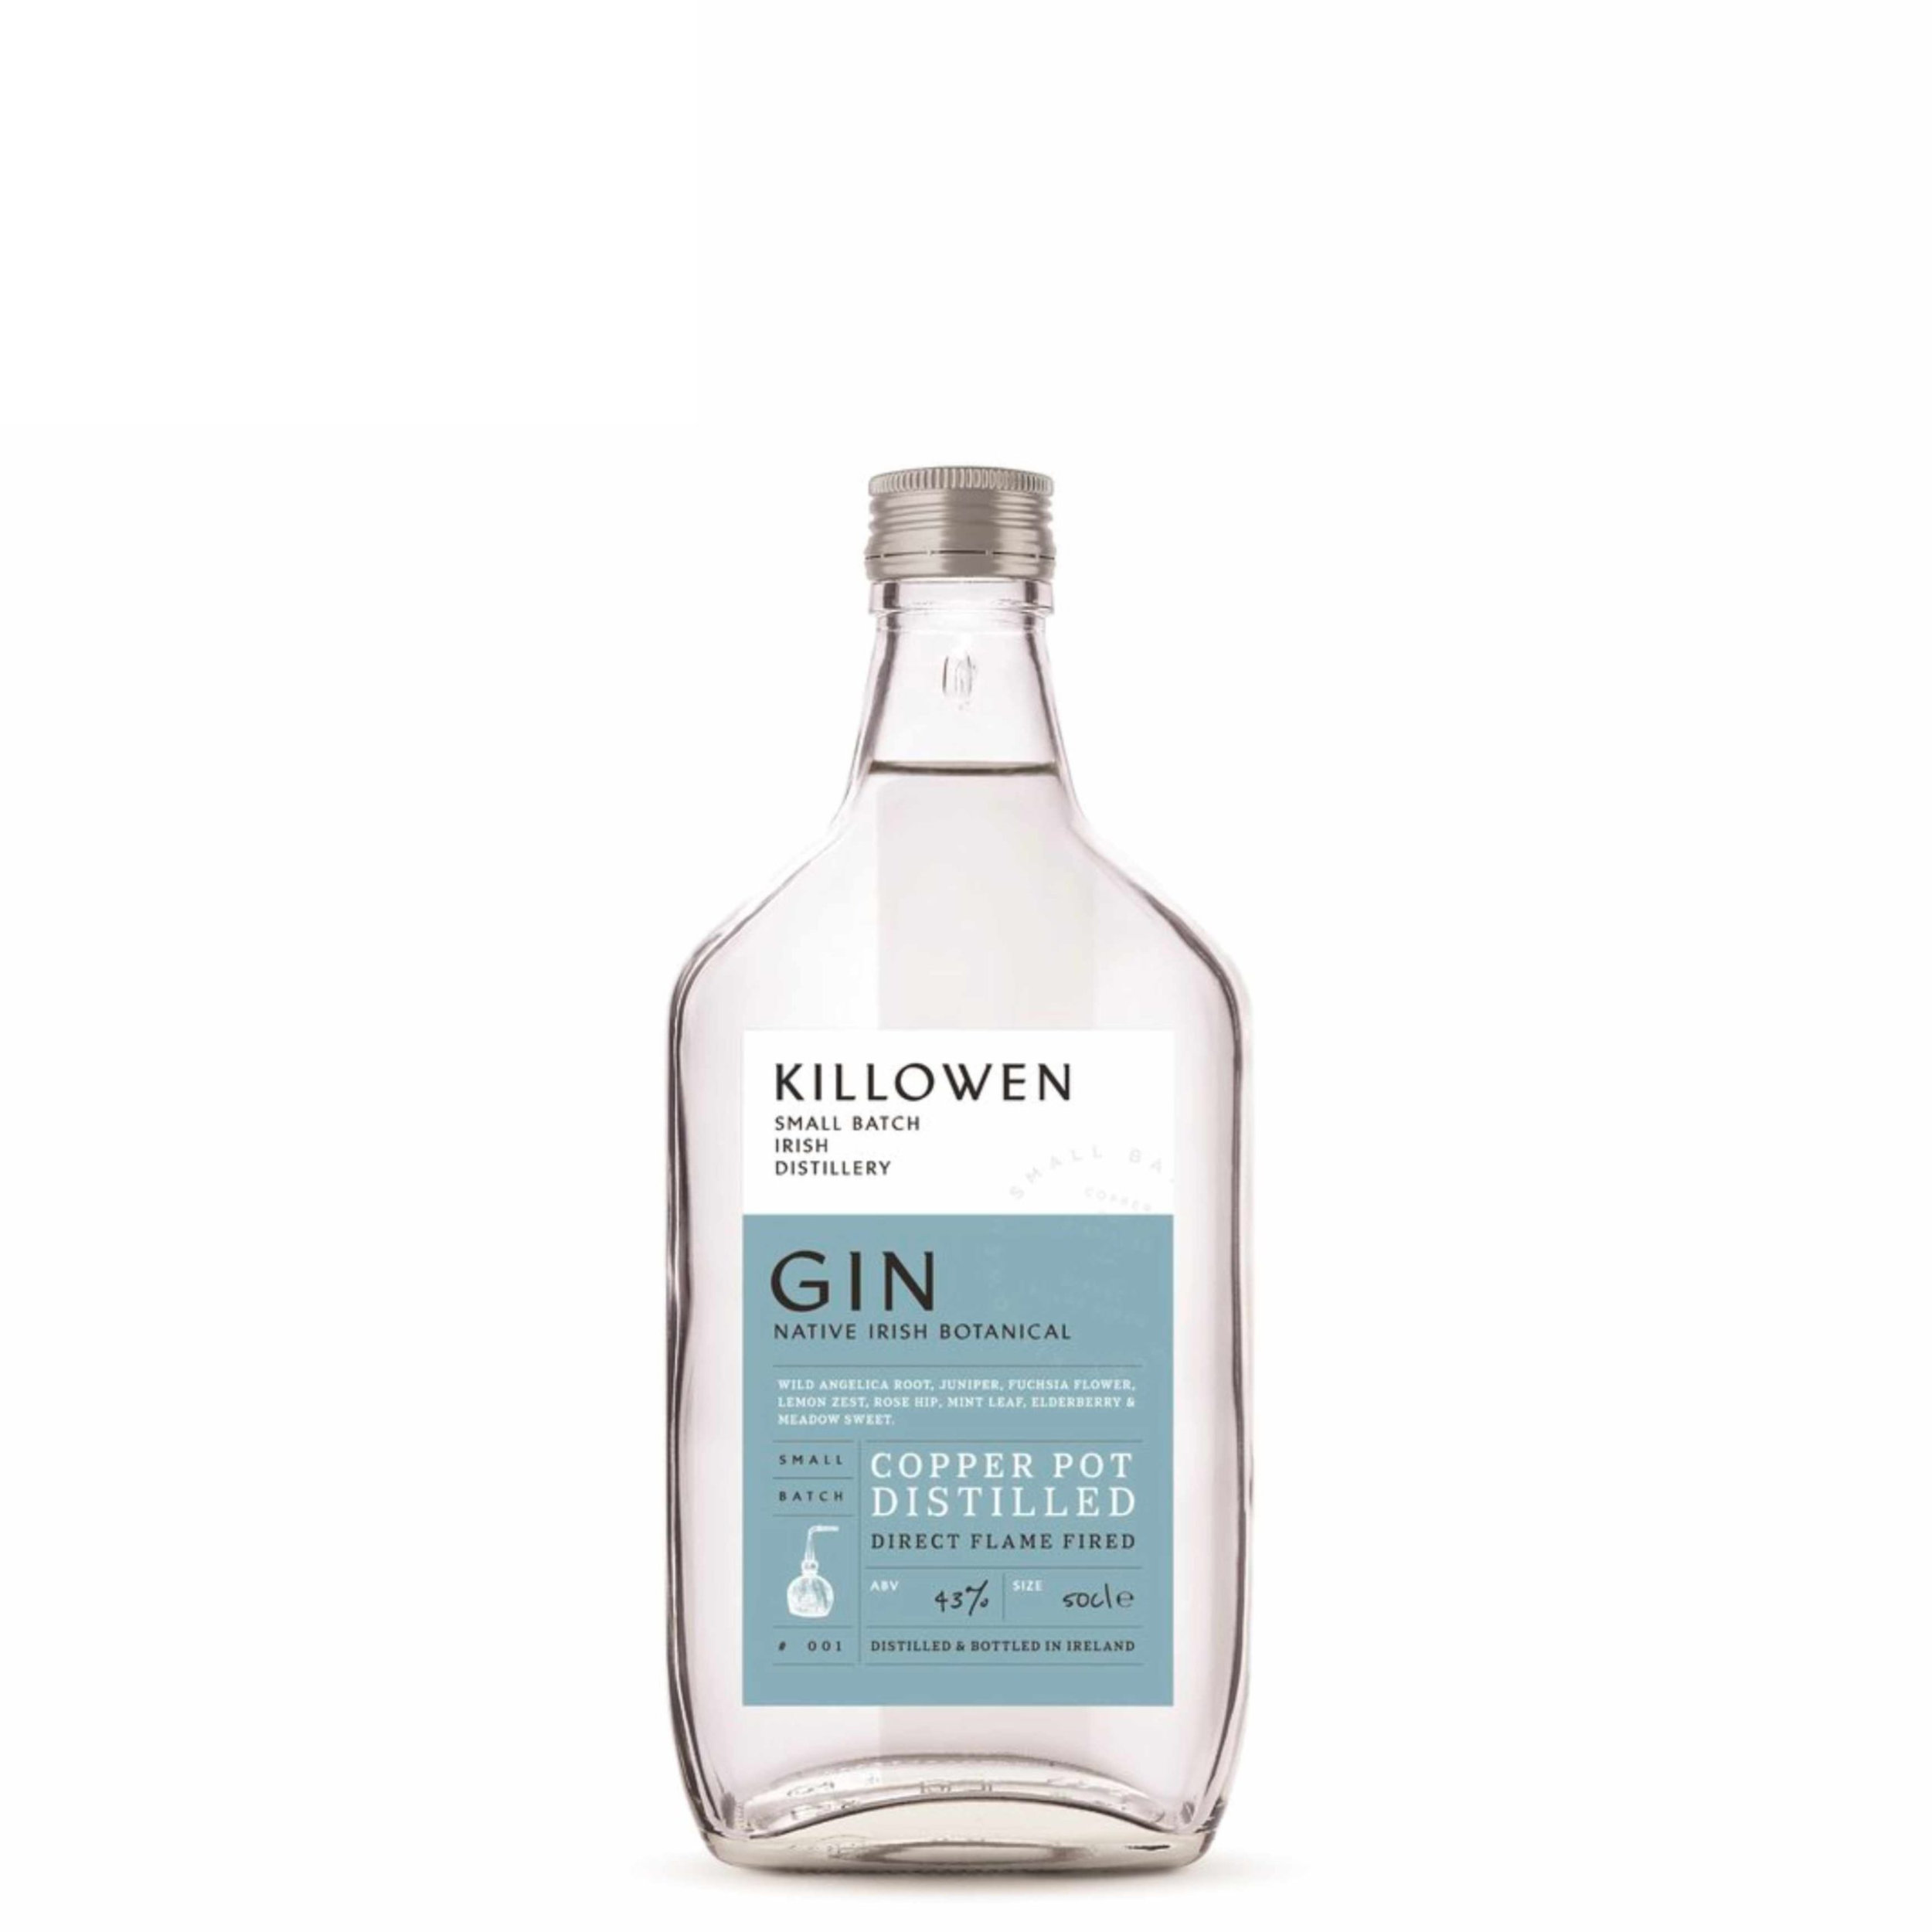 Killowen Gin